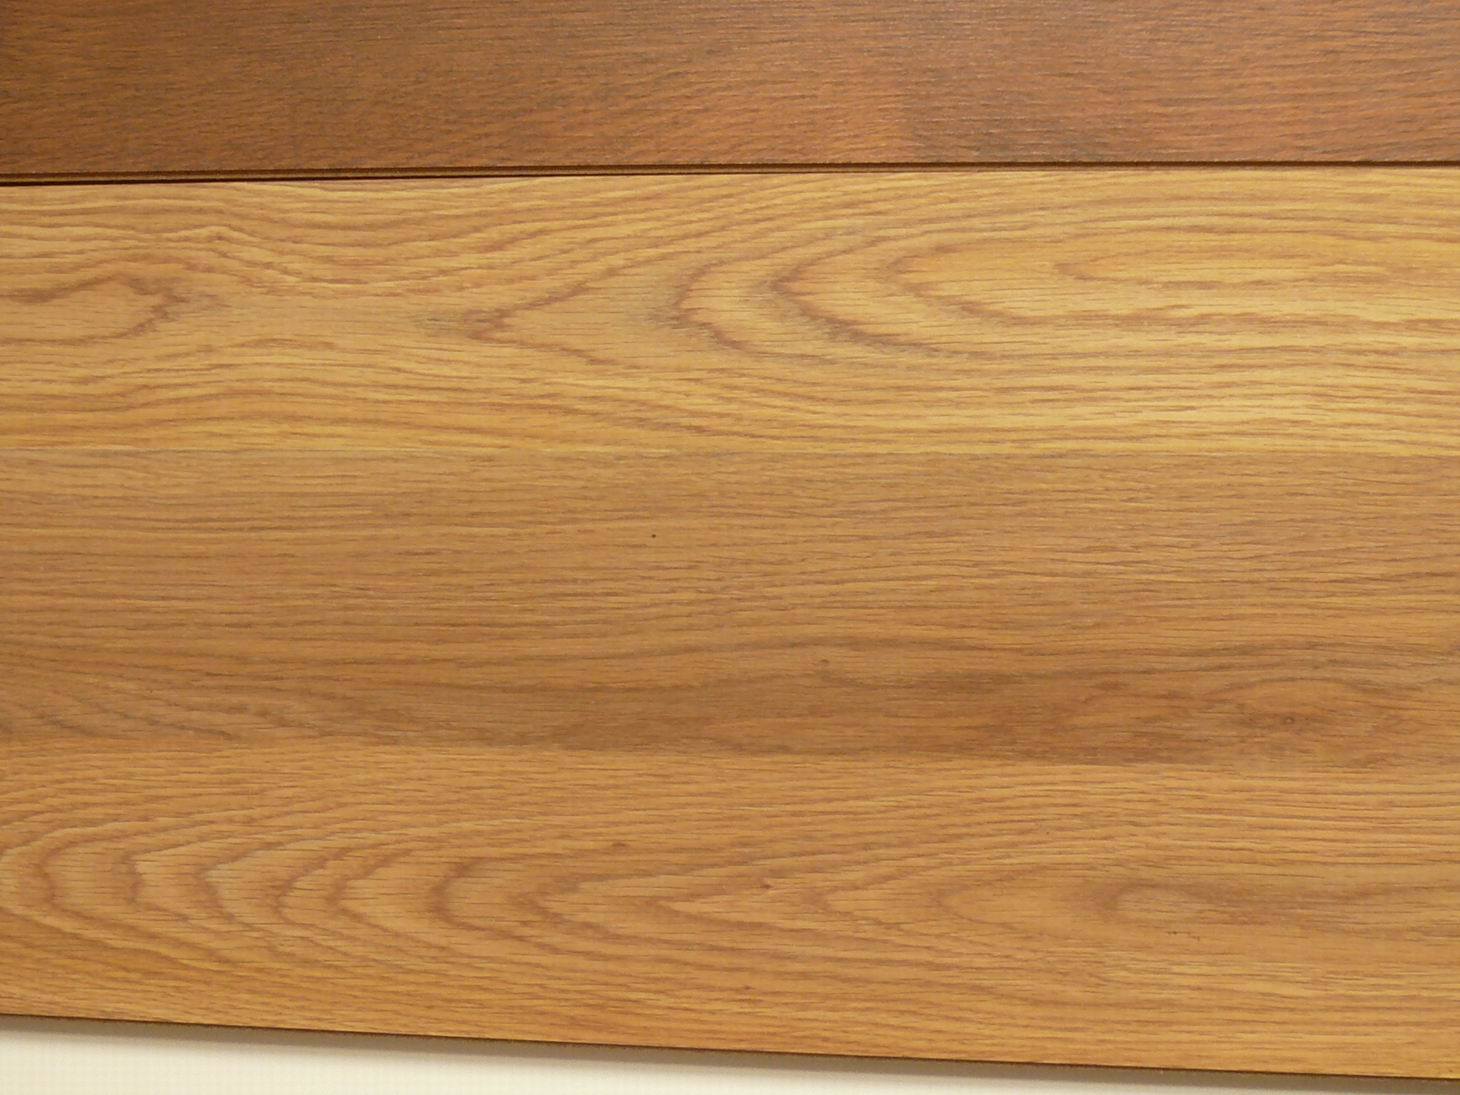 Export Standard Solid Wood Floor (12mm)